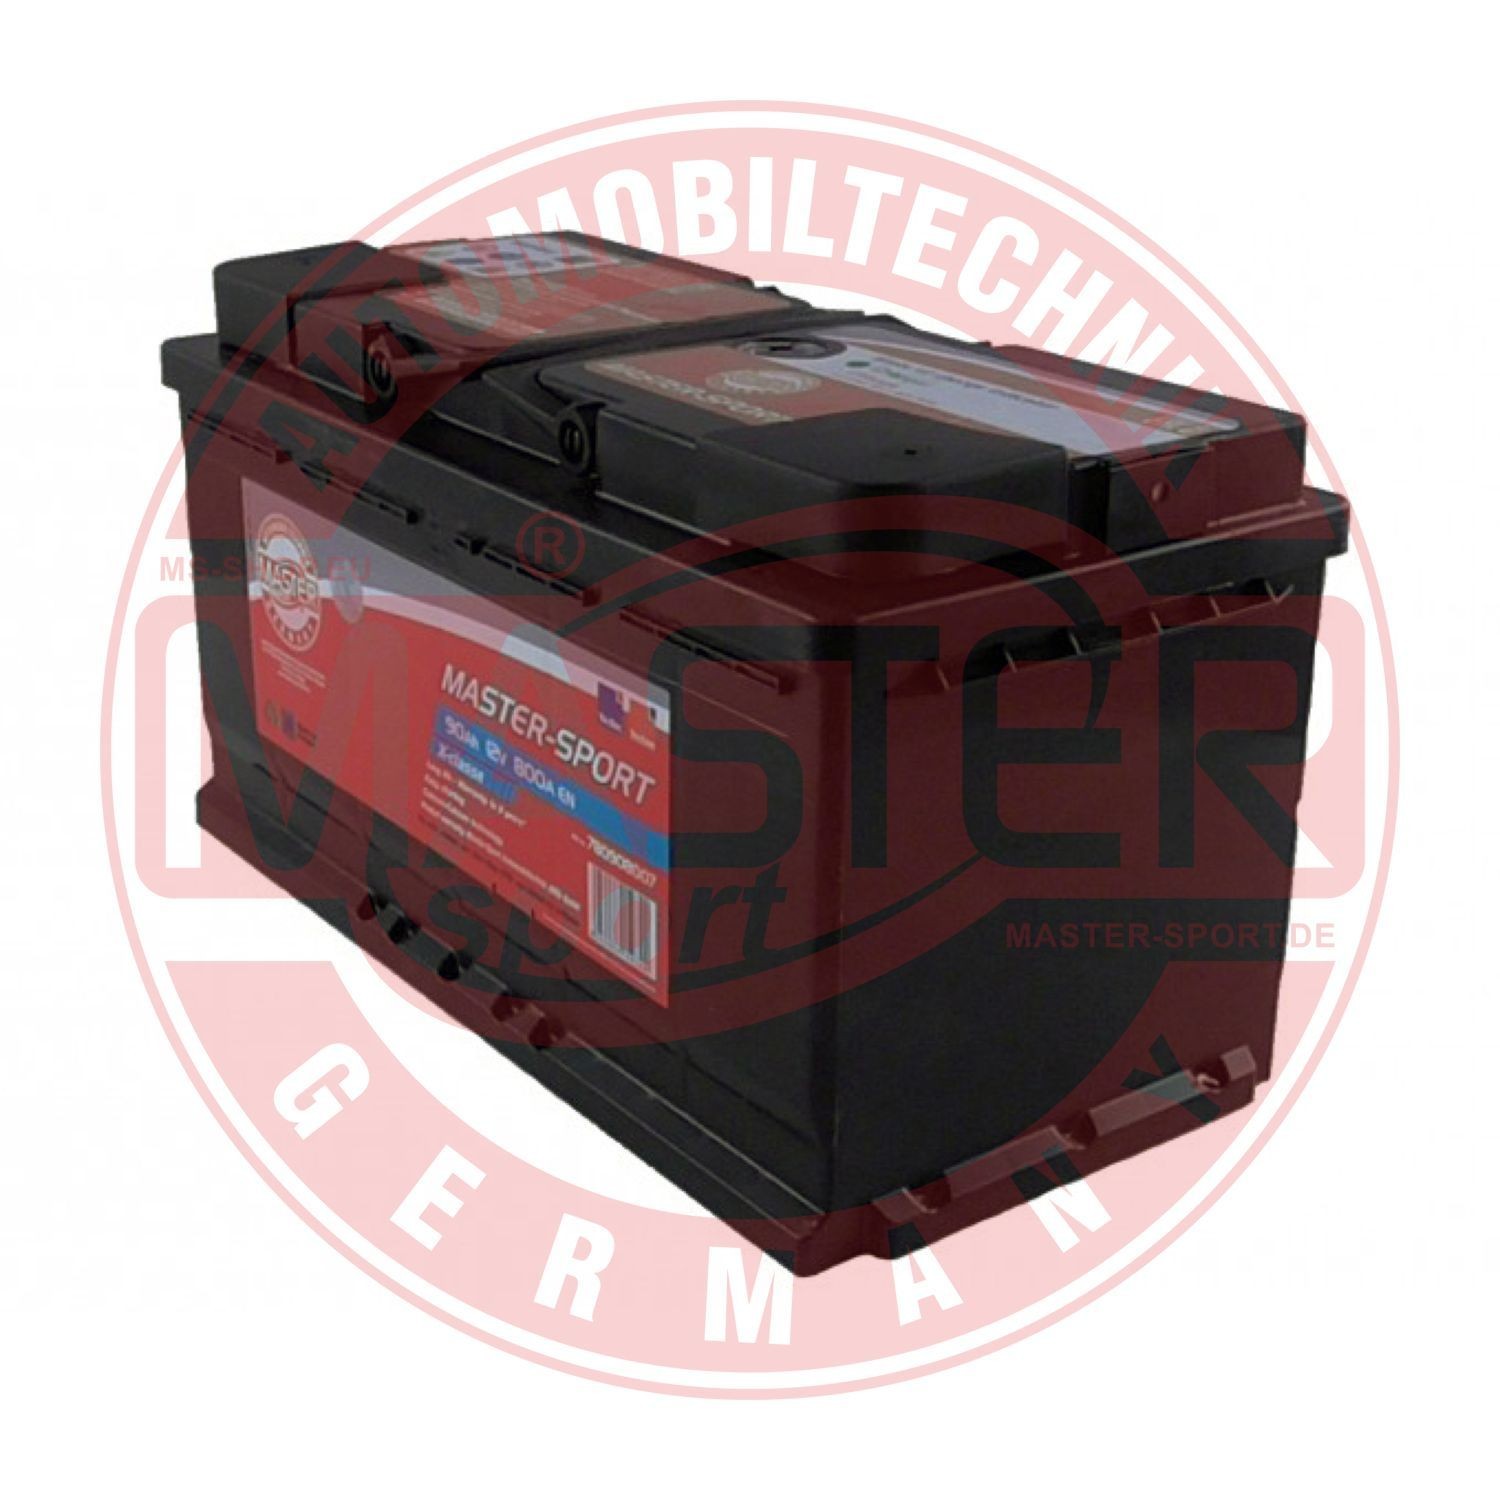 Batterie Démarrage Tab Magic pour Voiture 12V 100 Ah Positif Dx 900A  Allumage